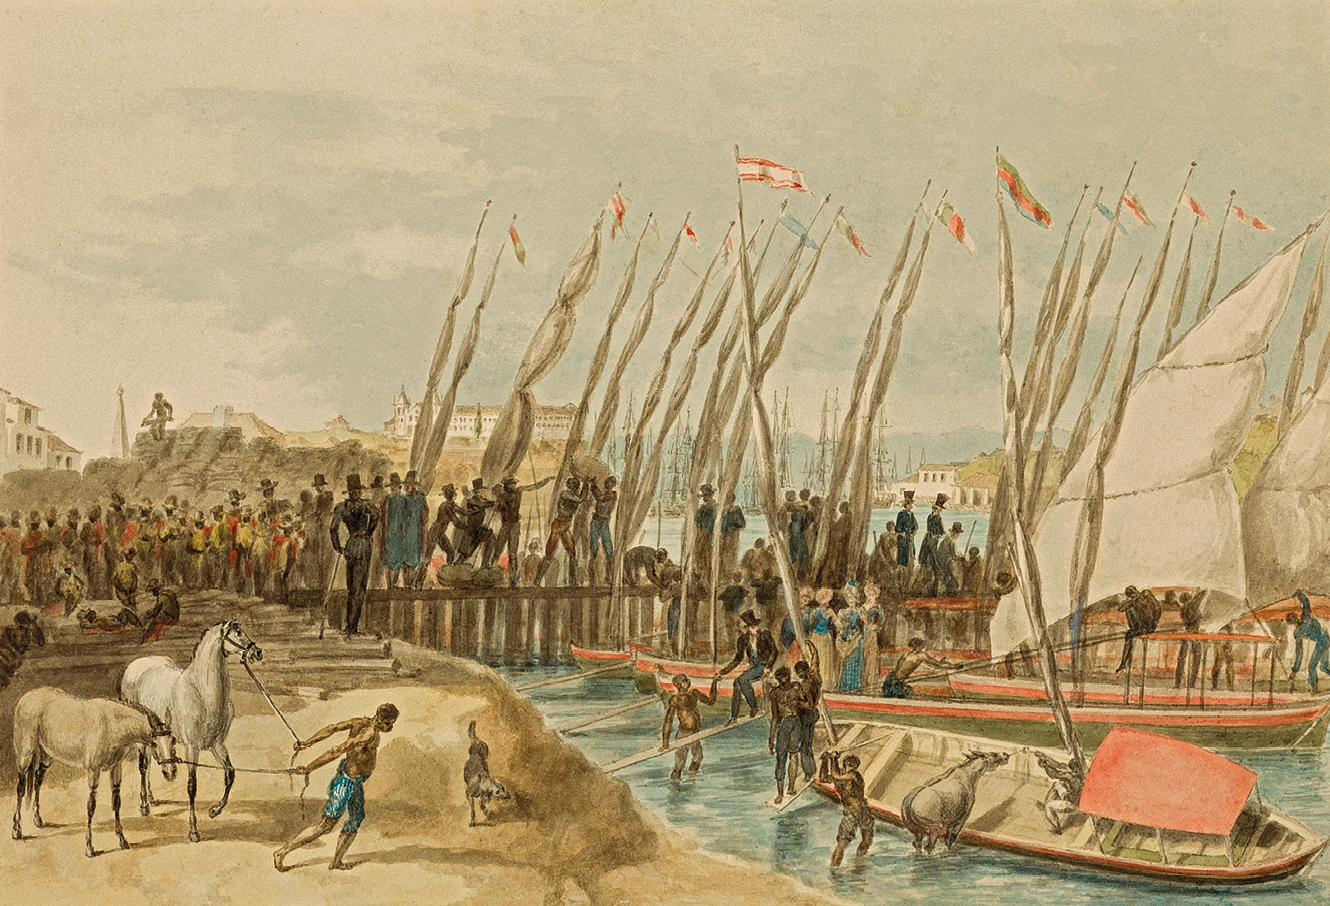 Aquarela. Em um porto, no primeiro plano da imagem, à esquerda, um homem puxa dois cavalos com uma corda; à direita, um curso de água com alguns barcos à vela de madeira, mais ao fundo, sobre um cais, com bandeiras, diversas pessoas aglomeradas.